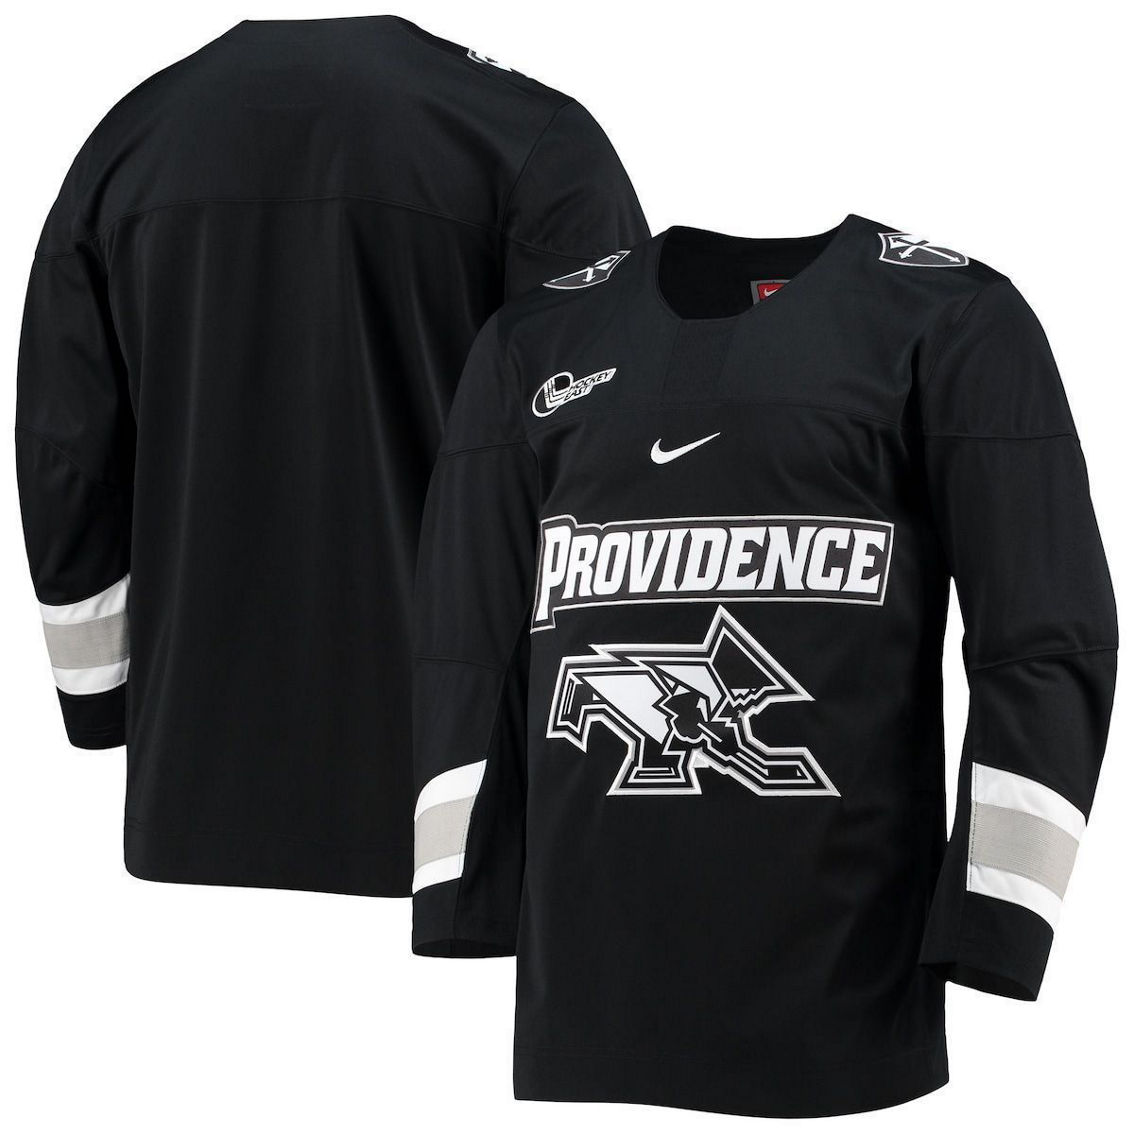 Nike Men's Black Providence Friars Replica Hockey Jersey | Fan Shop ...